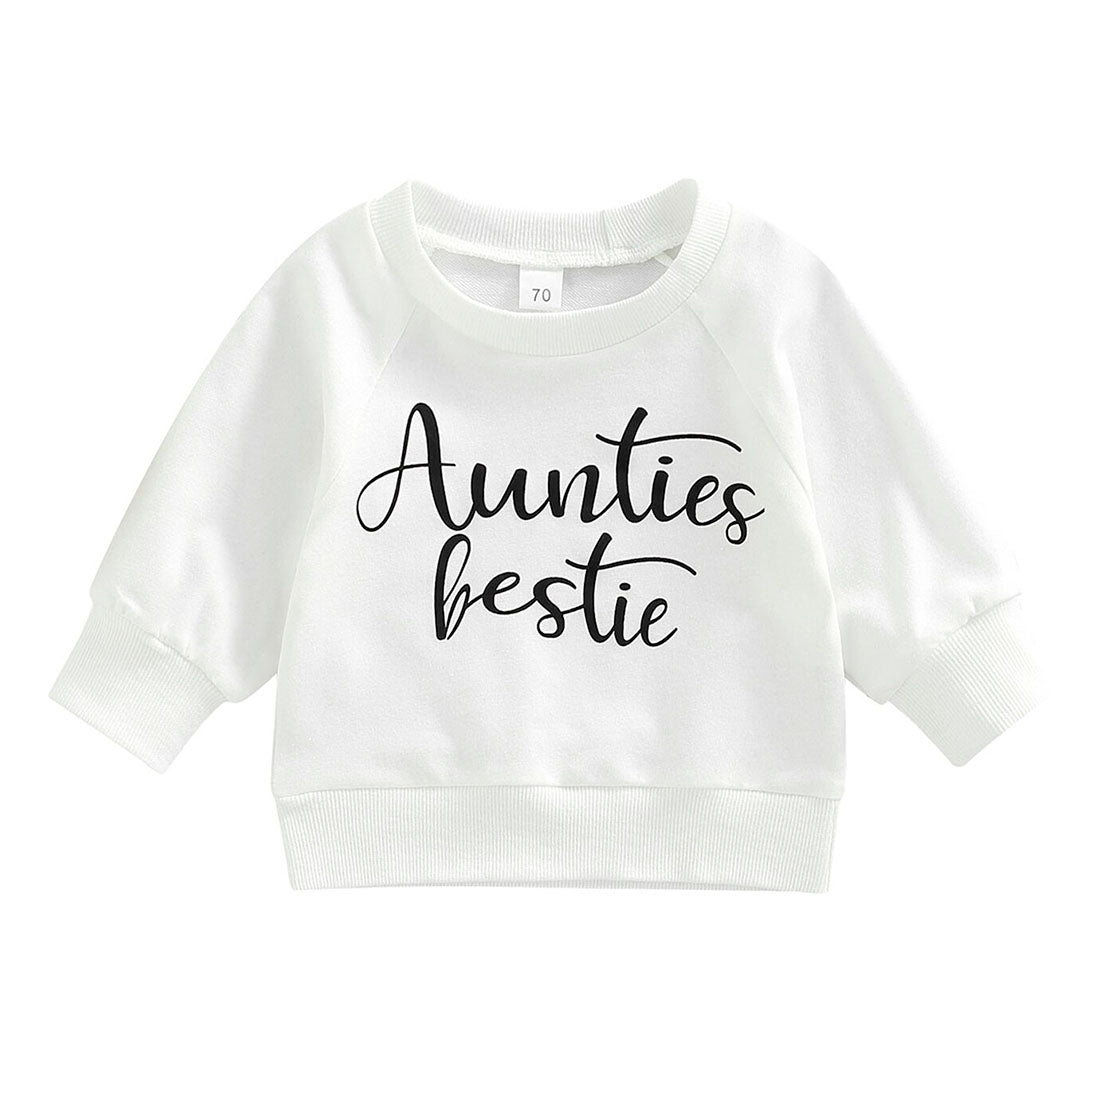 Aunties Bestie Baby Sweatshirt White 0-3 M 